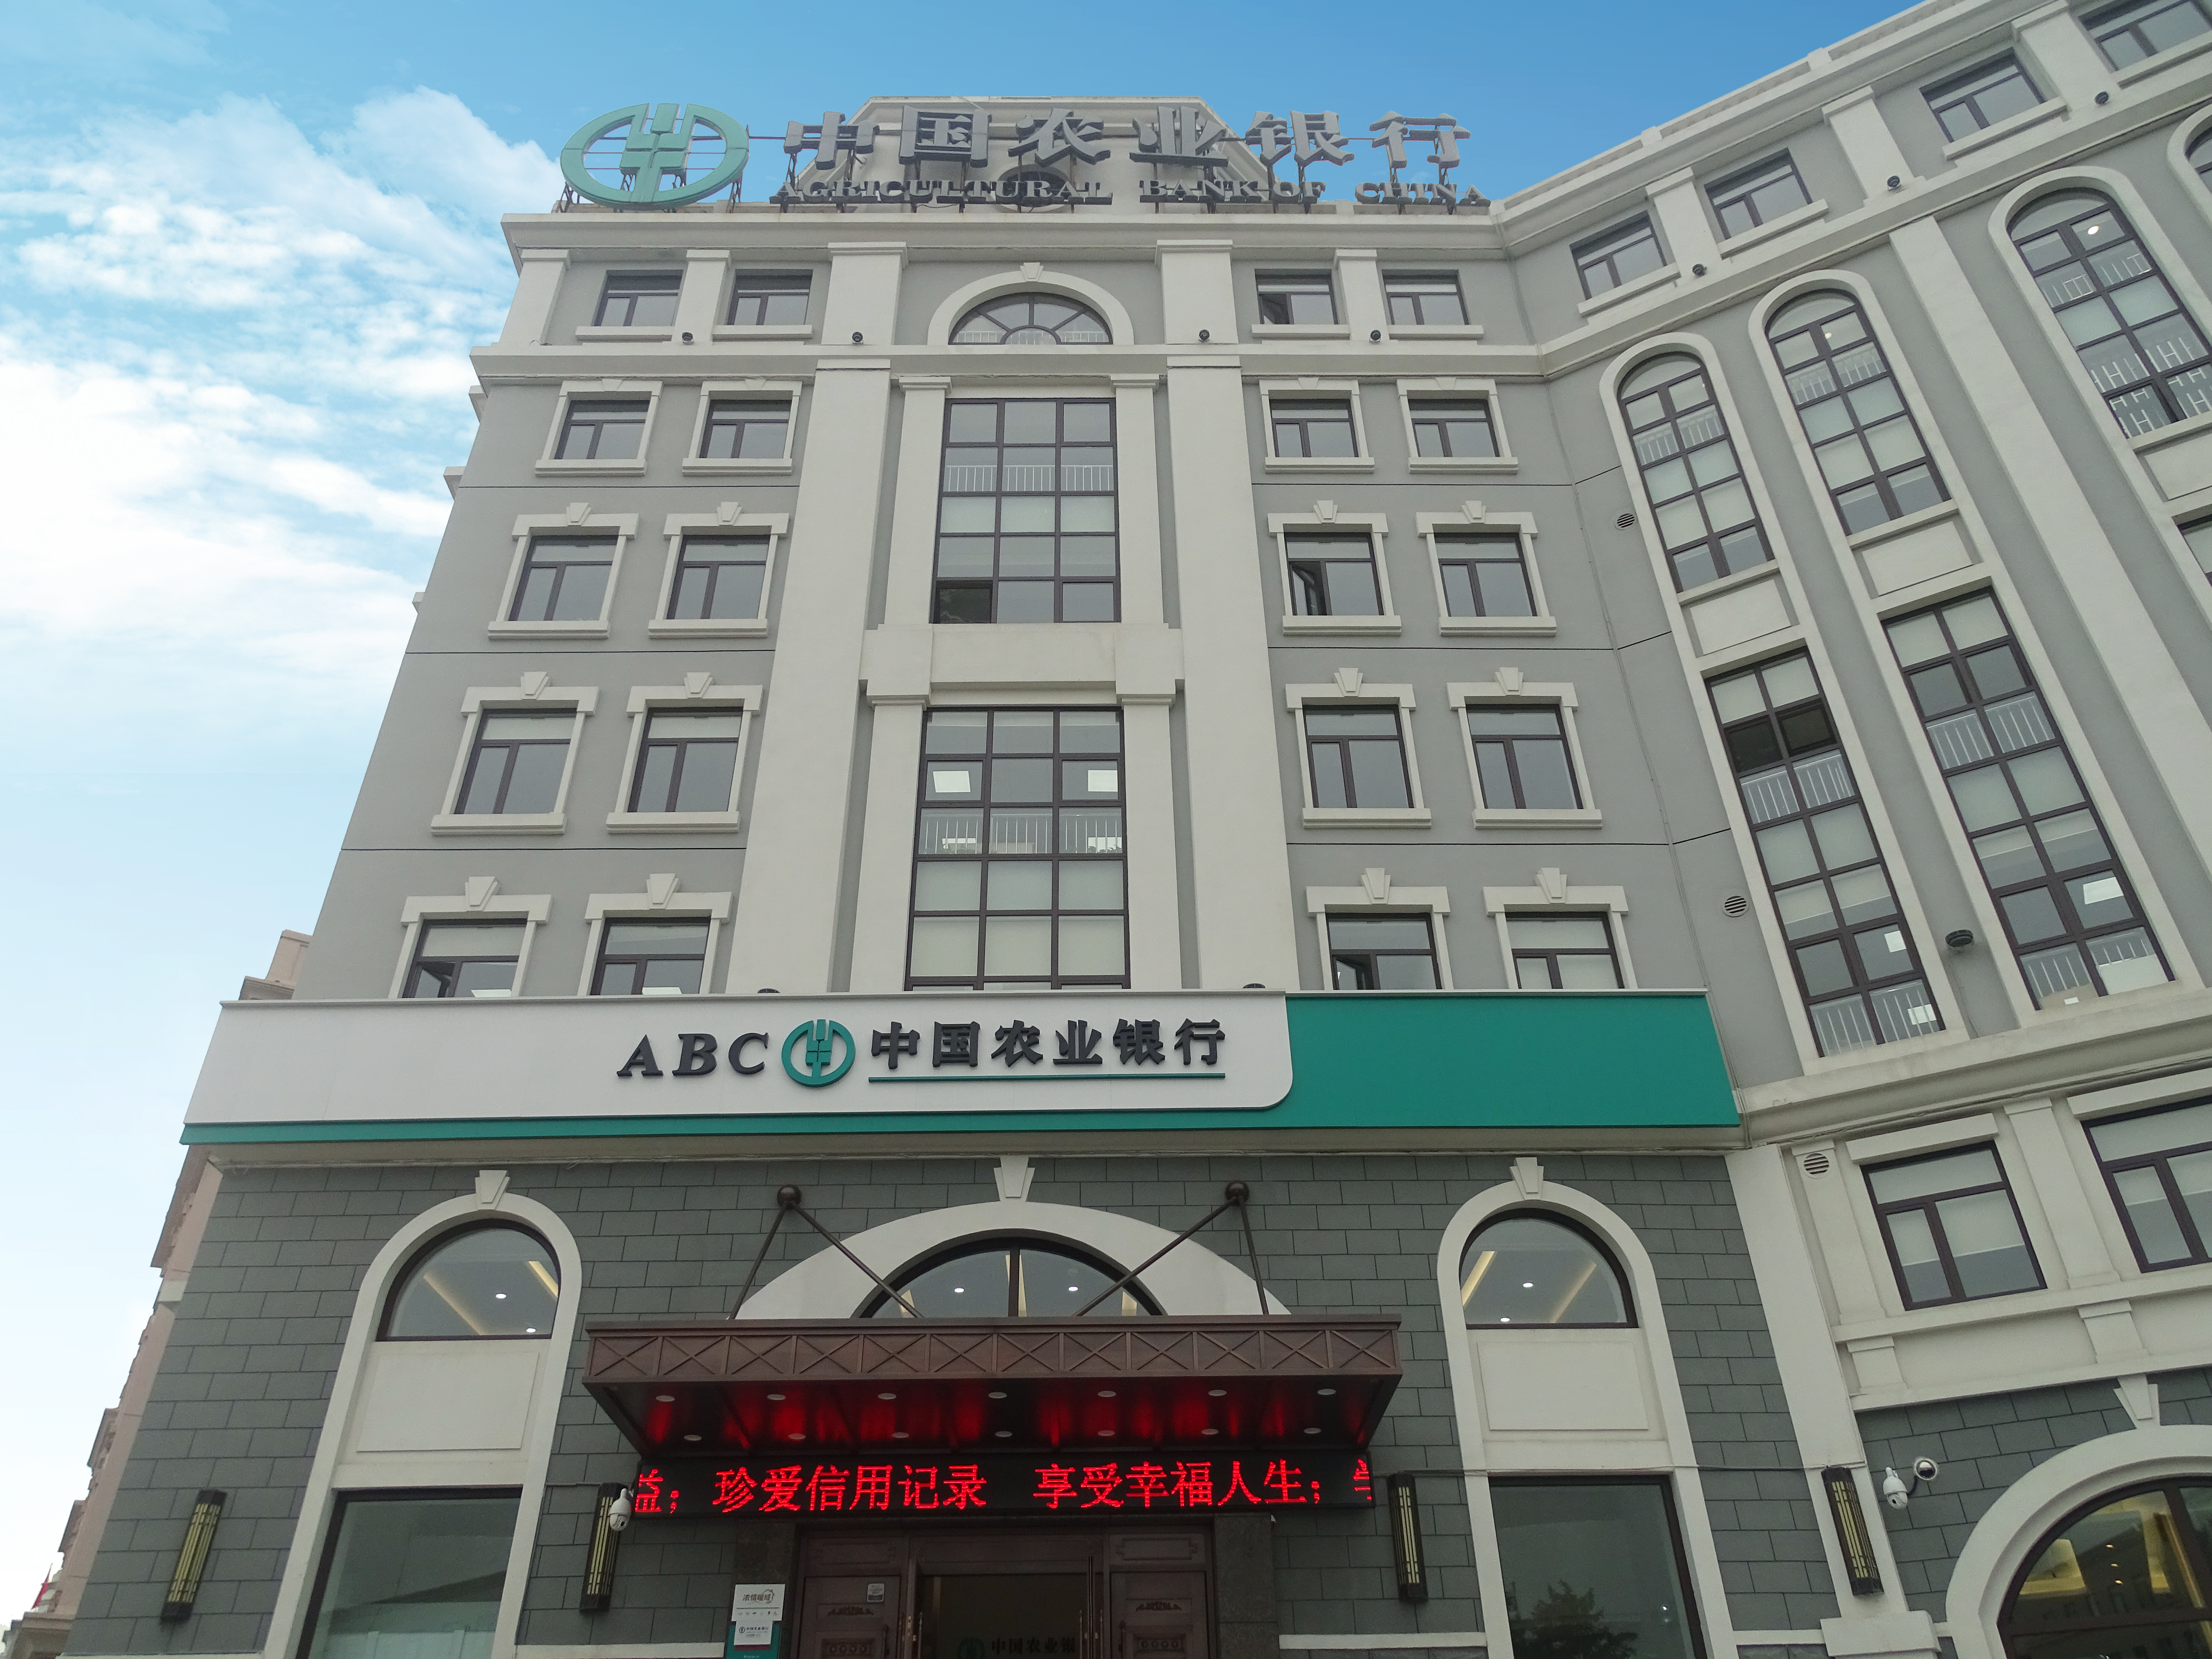 中國農業銀行股份有限公司大連市分行旅順支行營業辦公用房整體裝修改造項目